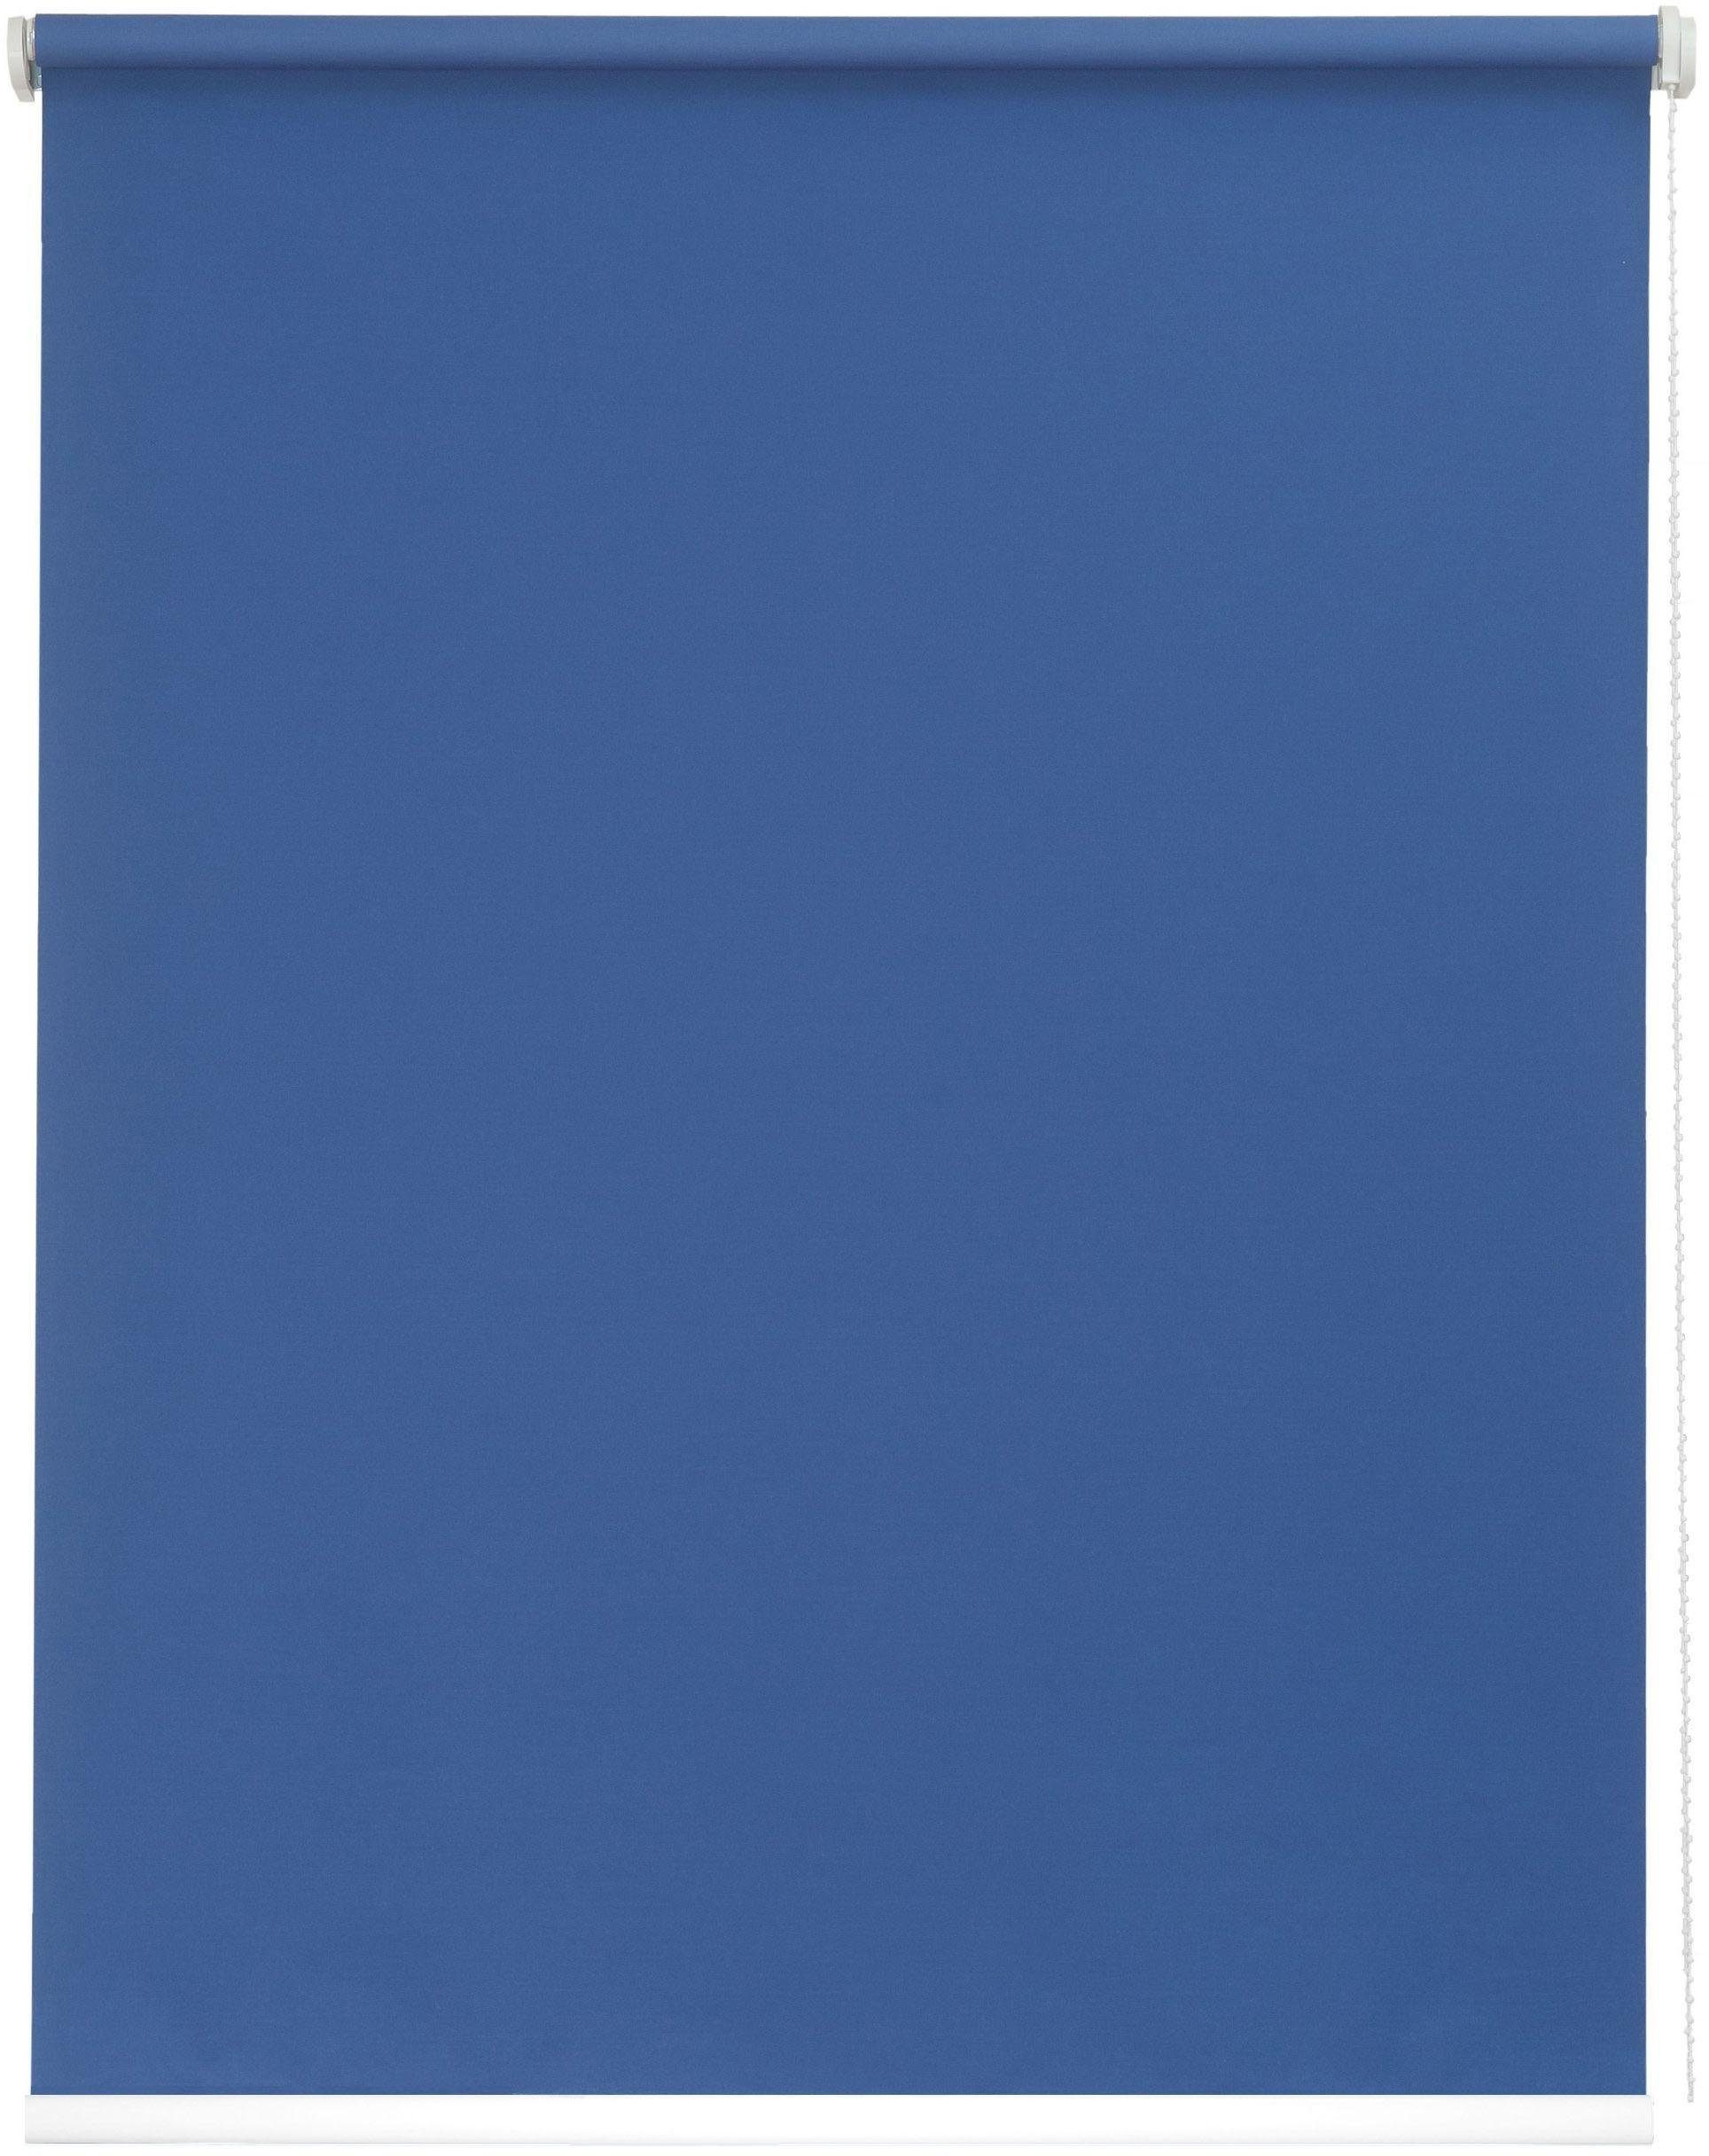 One size verschraubt, blau sunlines, Style uni, in Lichtschutz, Seitenzugrollo freihängend, Made Germany